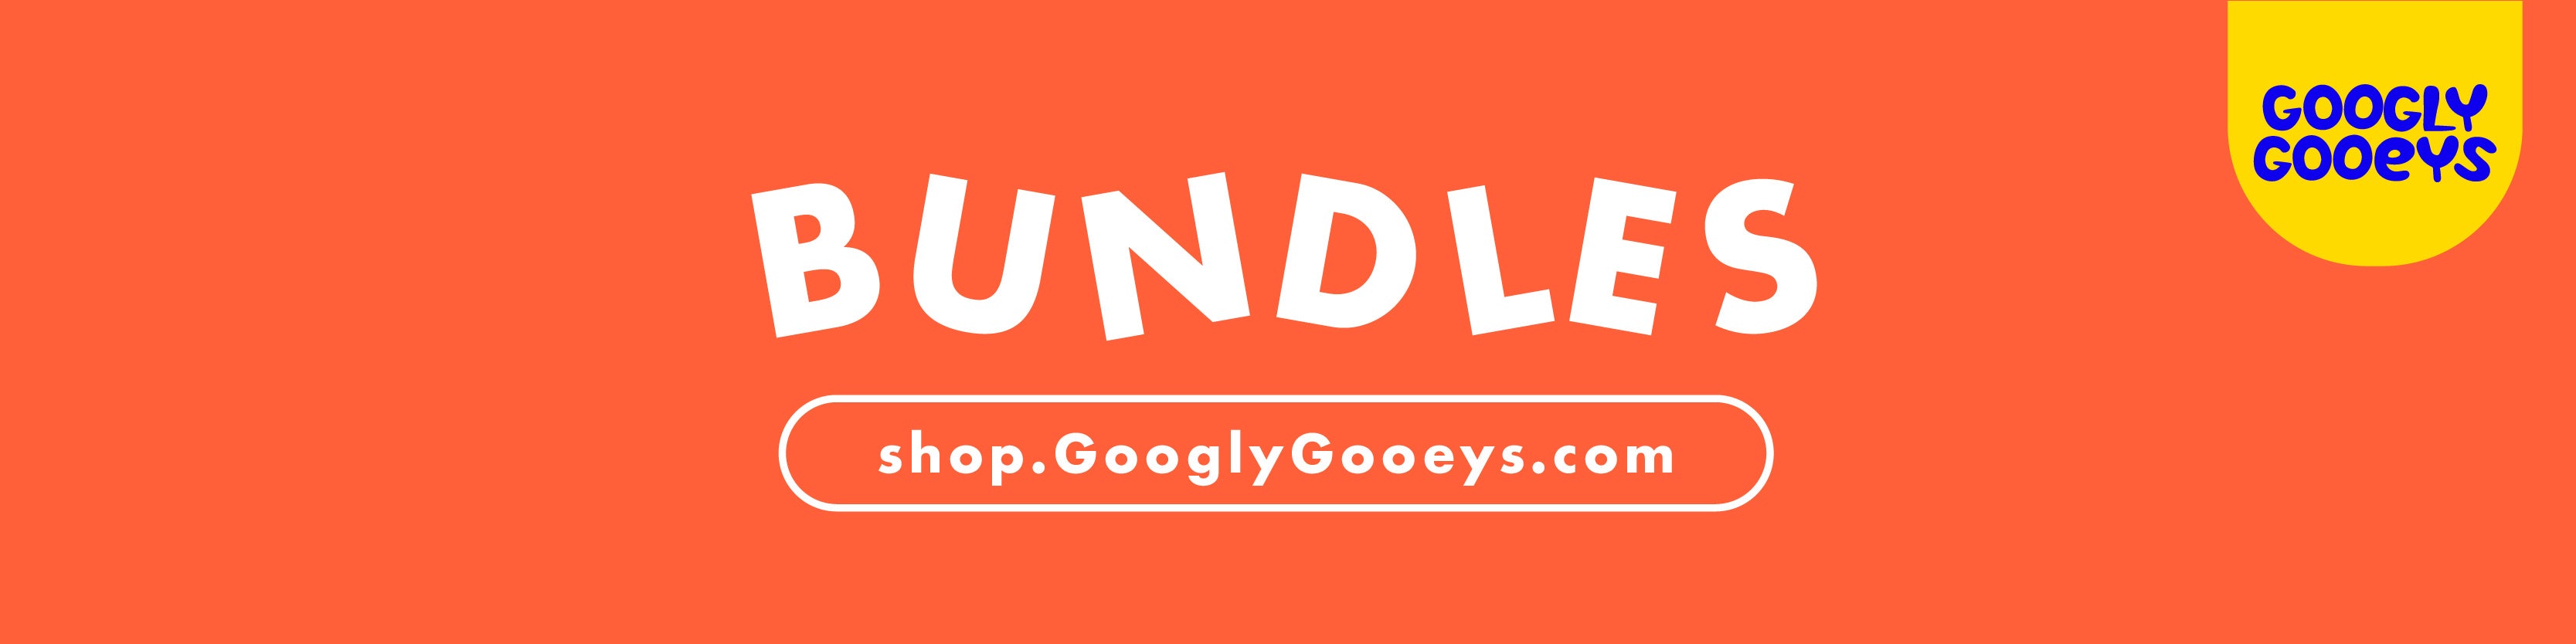 Googly Gooeys Shop - Bundles